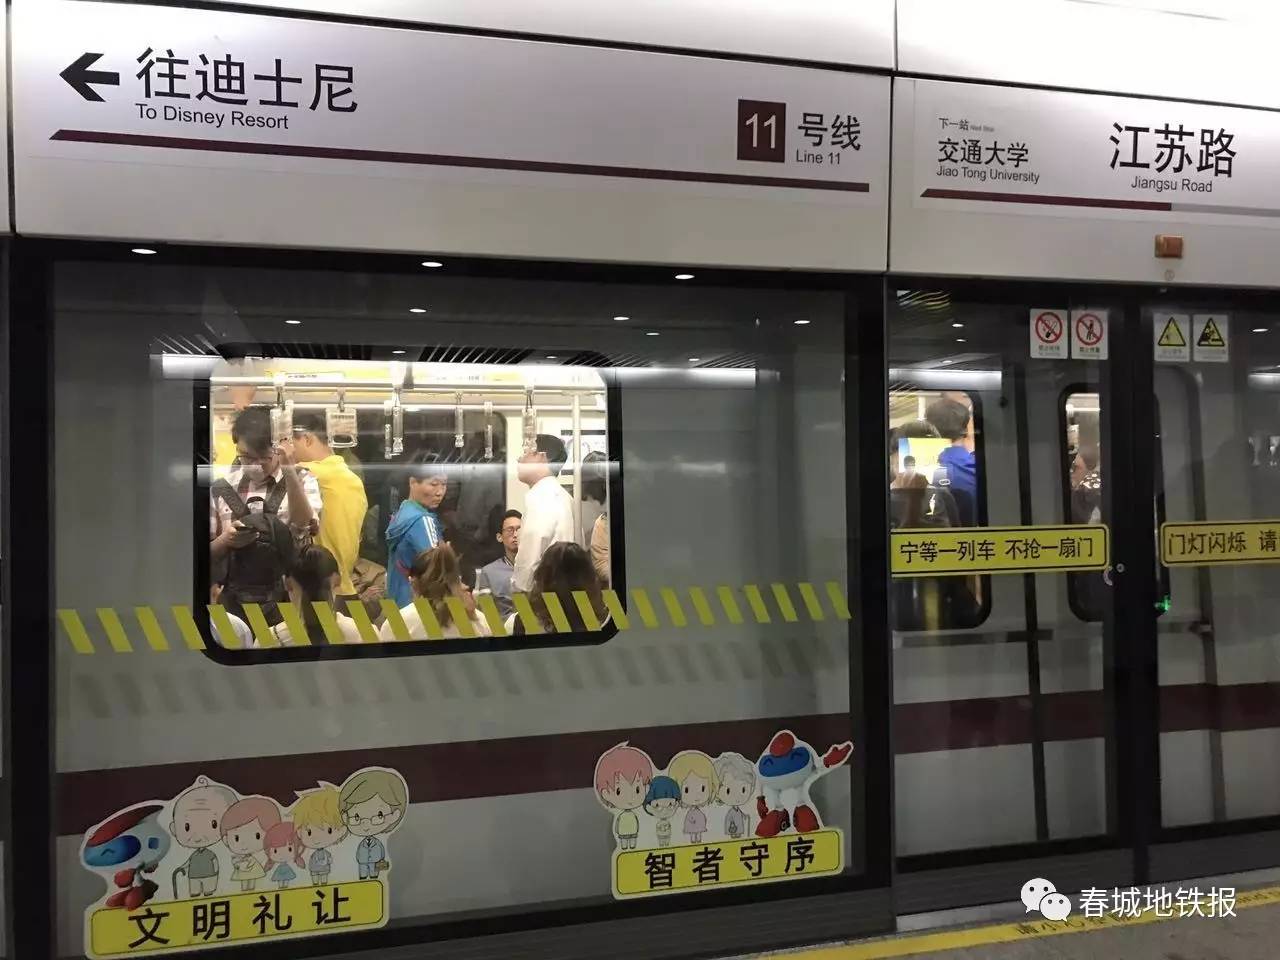 上海迪士尼地铁专线,会成为你去上海迪士尼的原因之一吗?